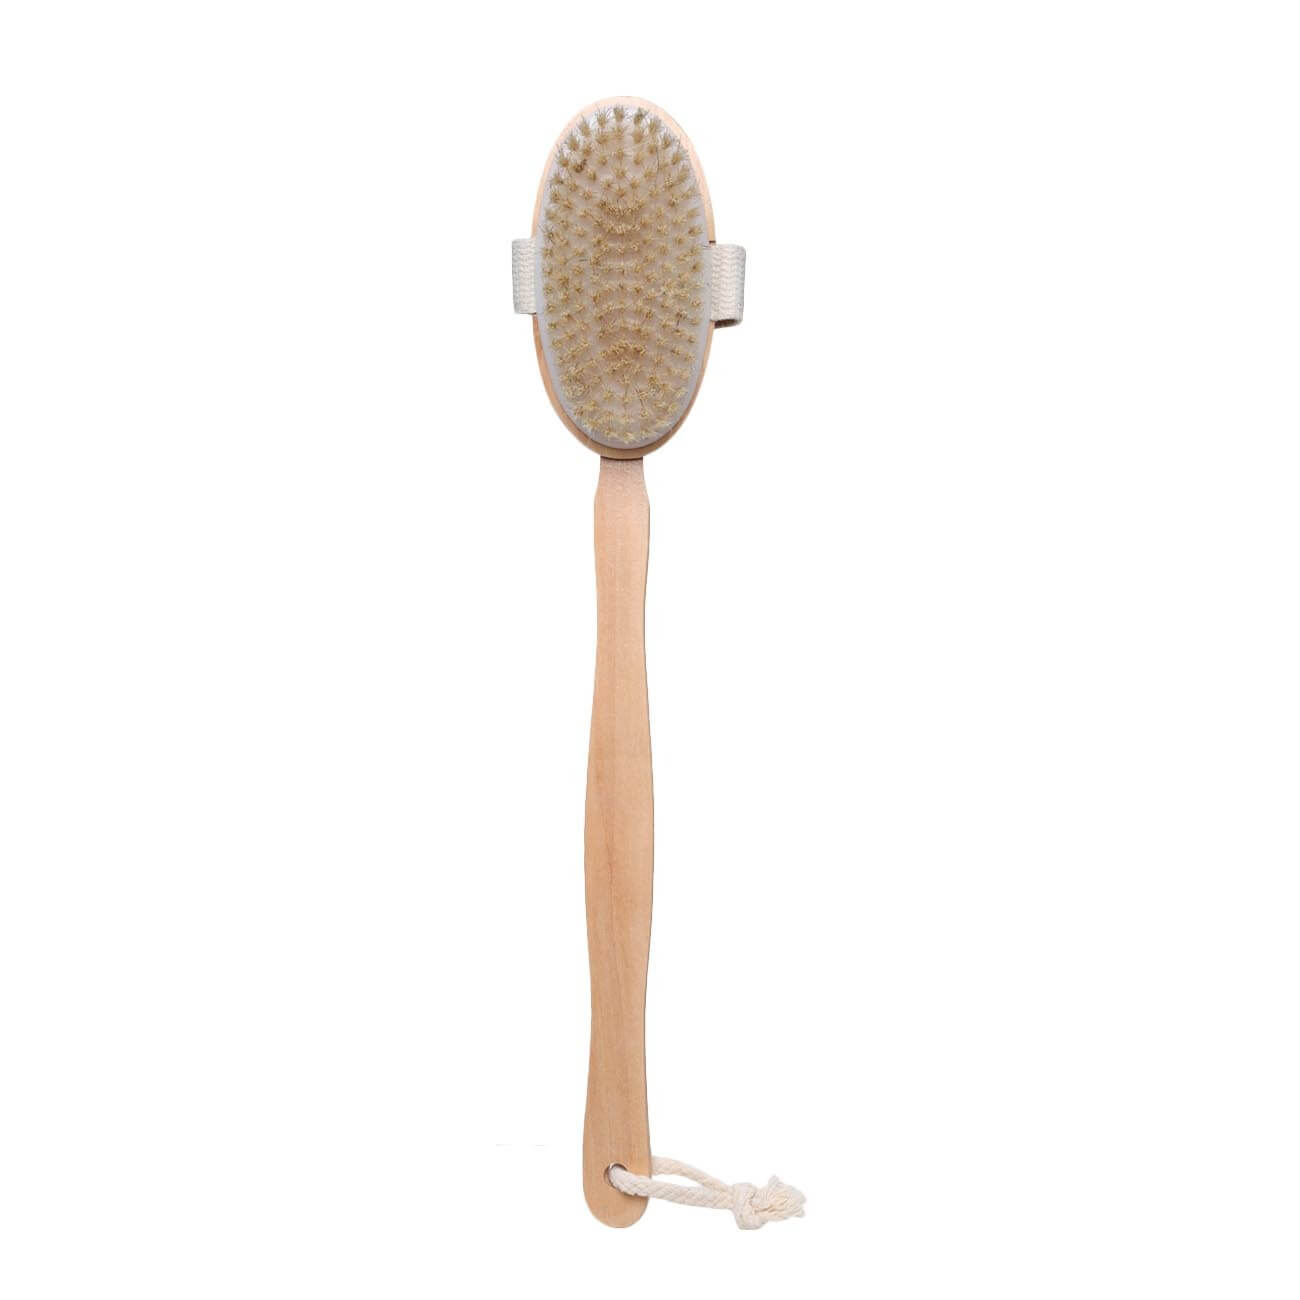 Щетка для сухого массажа, 40 см, с держателем, дерево/нейлон, Bamboo spa щетка для одежды и обуви savanna 21×3 4 см 59 пучков искусственная щетина